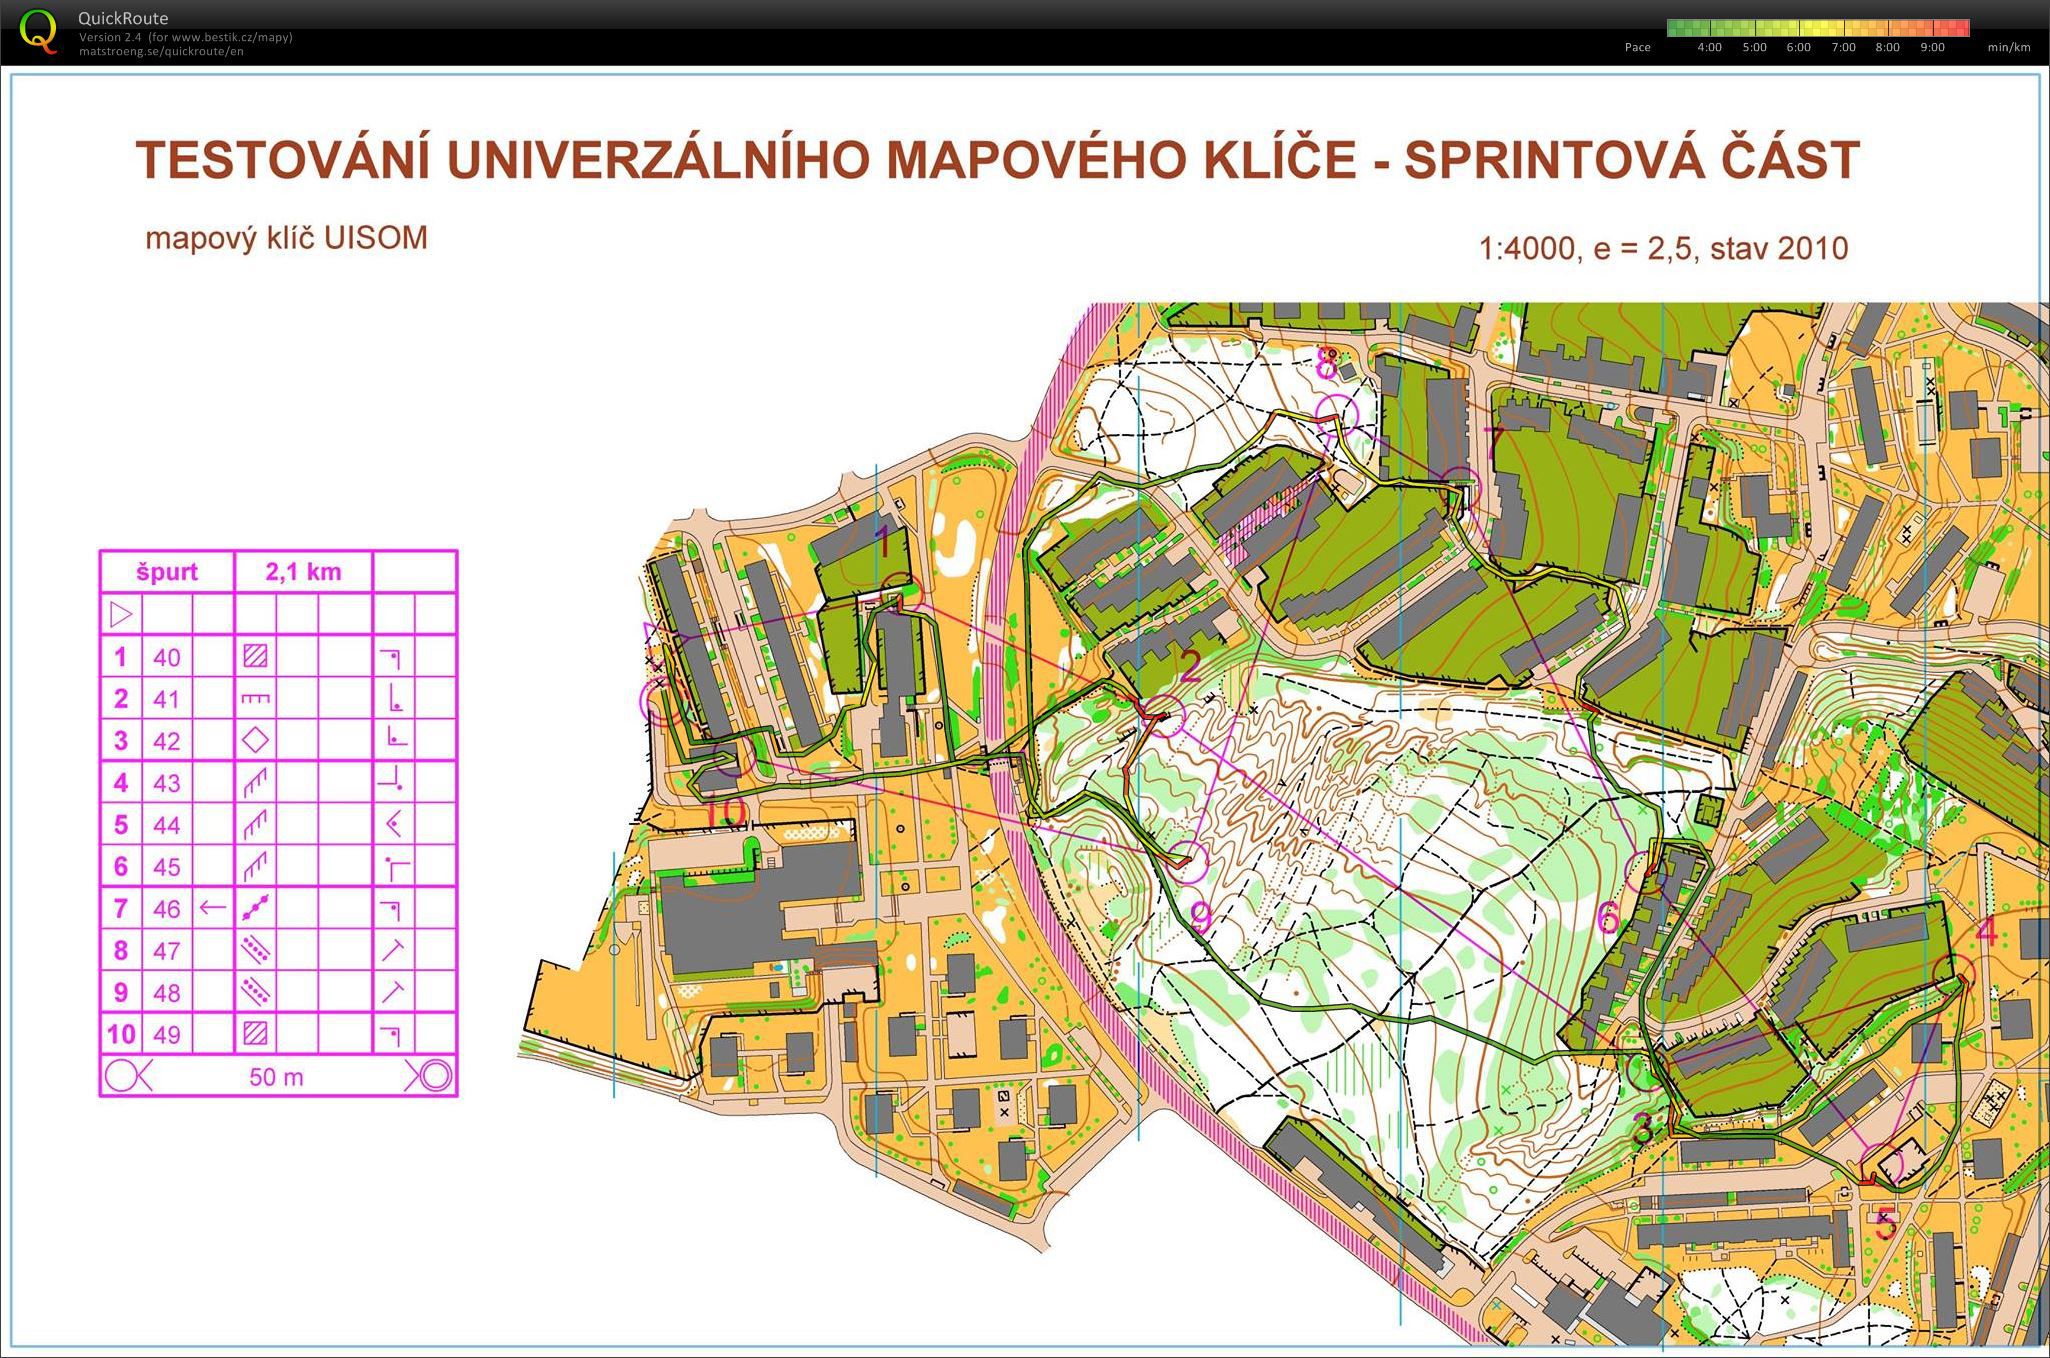 testování univerzálního mapového klíče - sprint (24/04/2014)